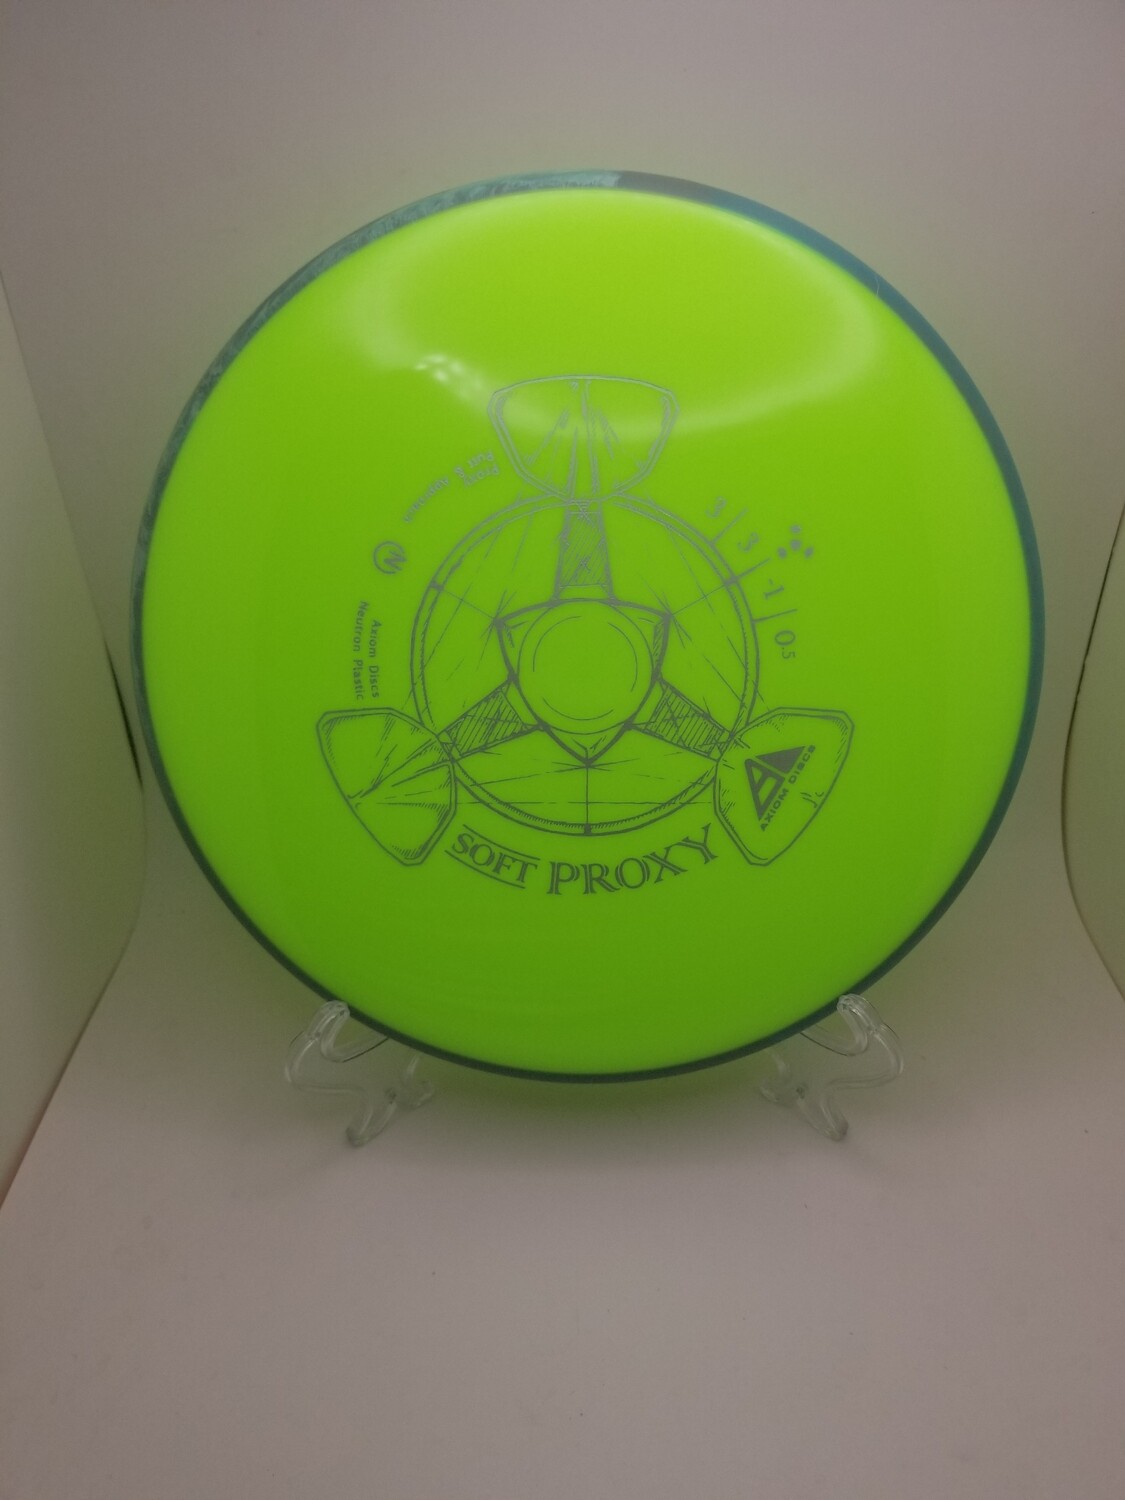 Axiom Discs Soft Neutron Proxy Day Glow Green Plate/ Grey swirl Rim 173g